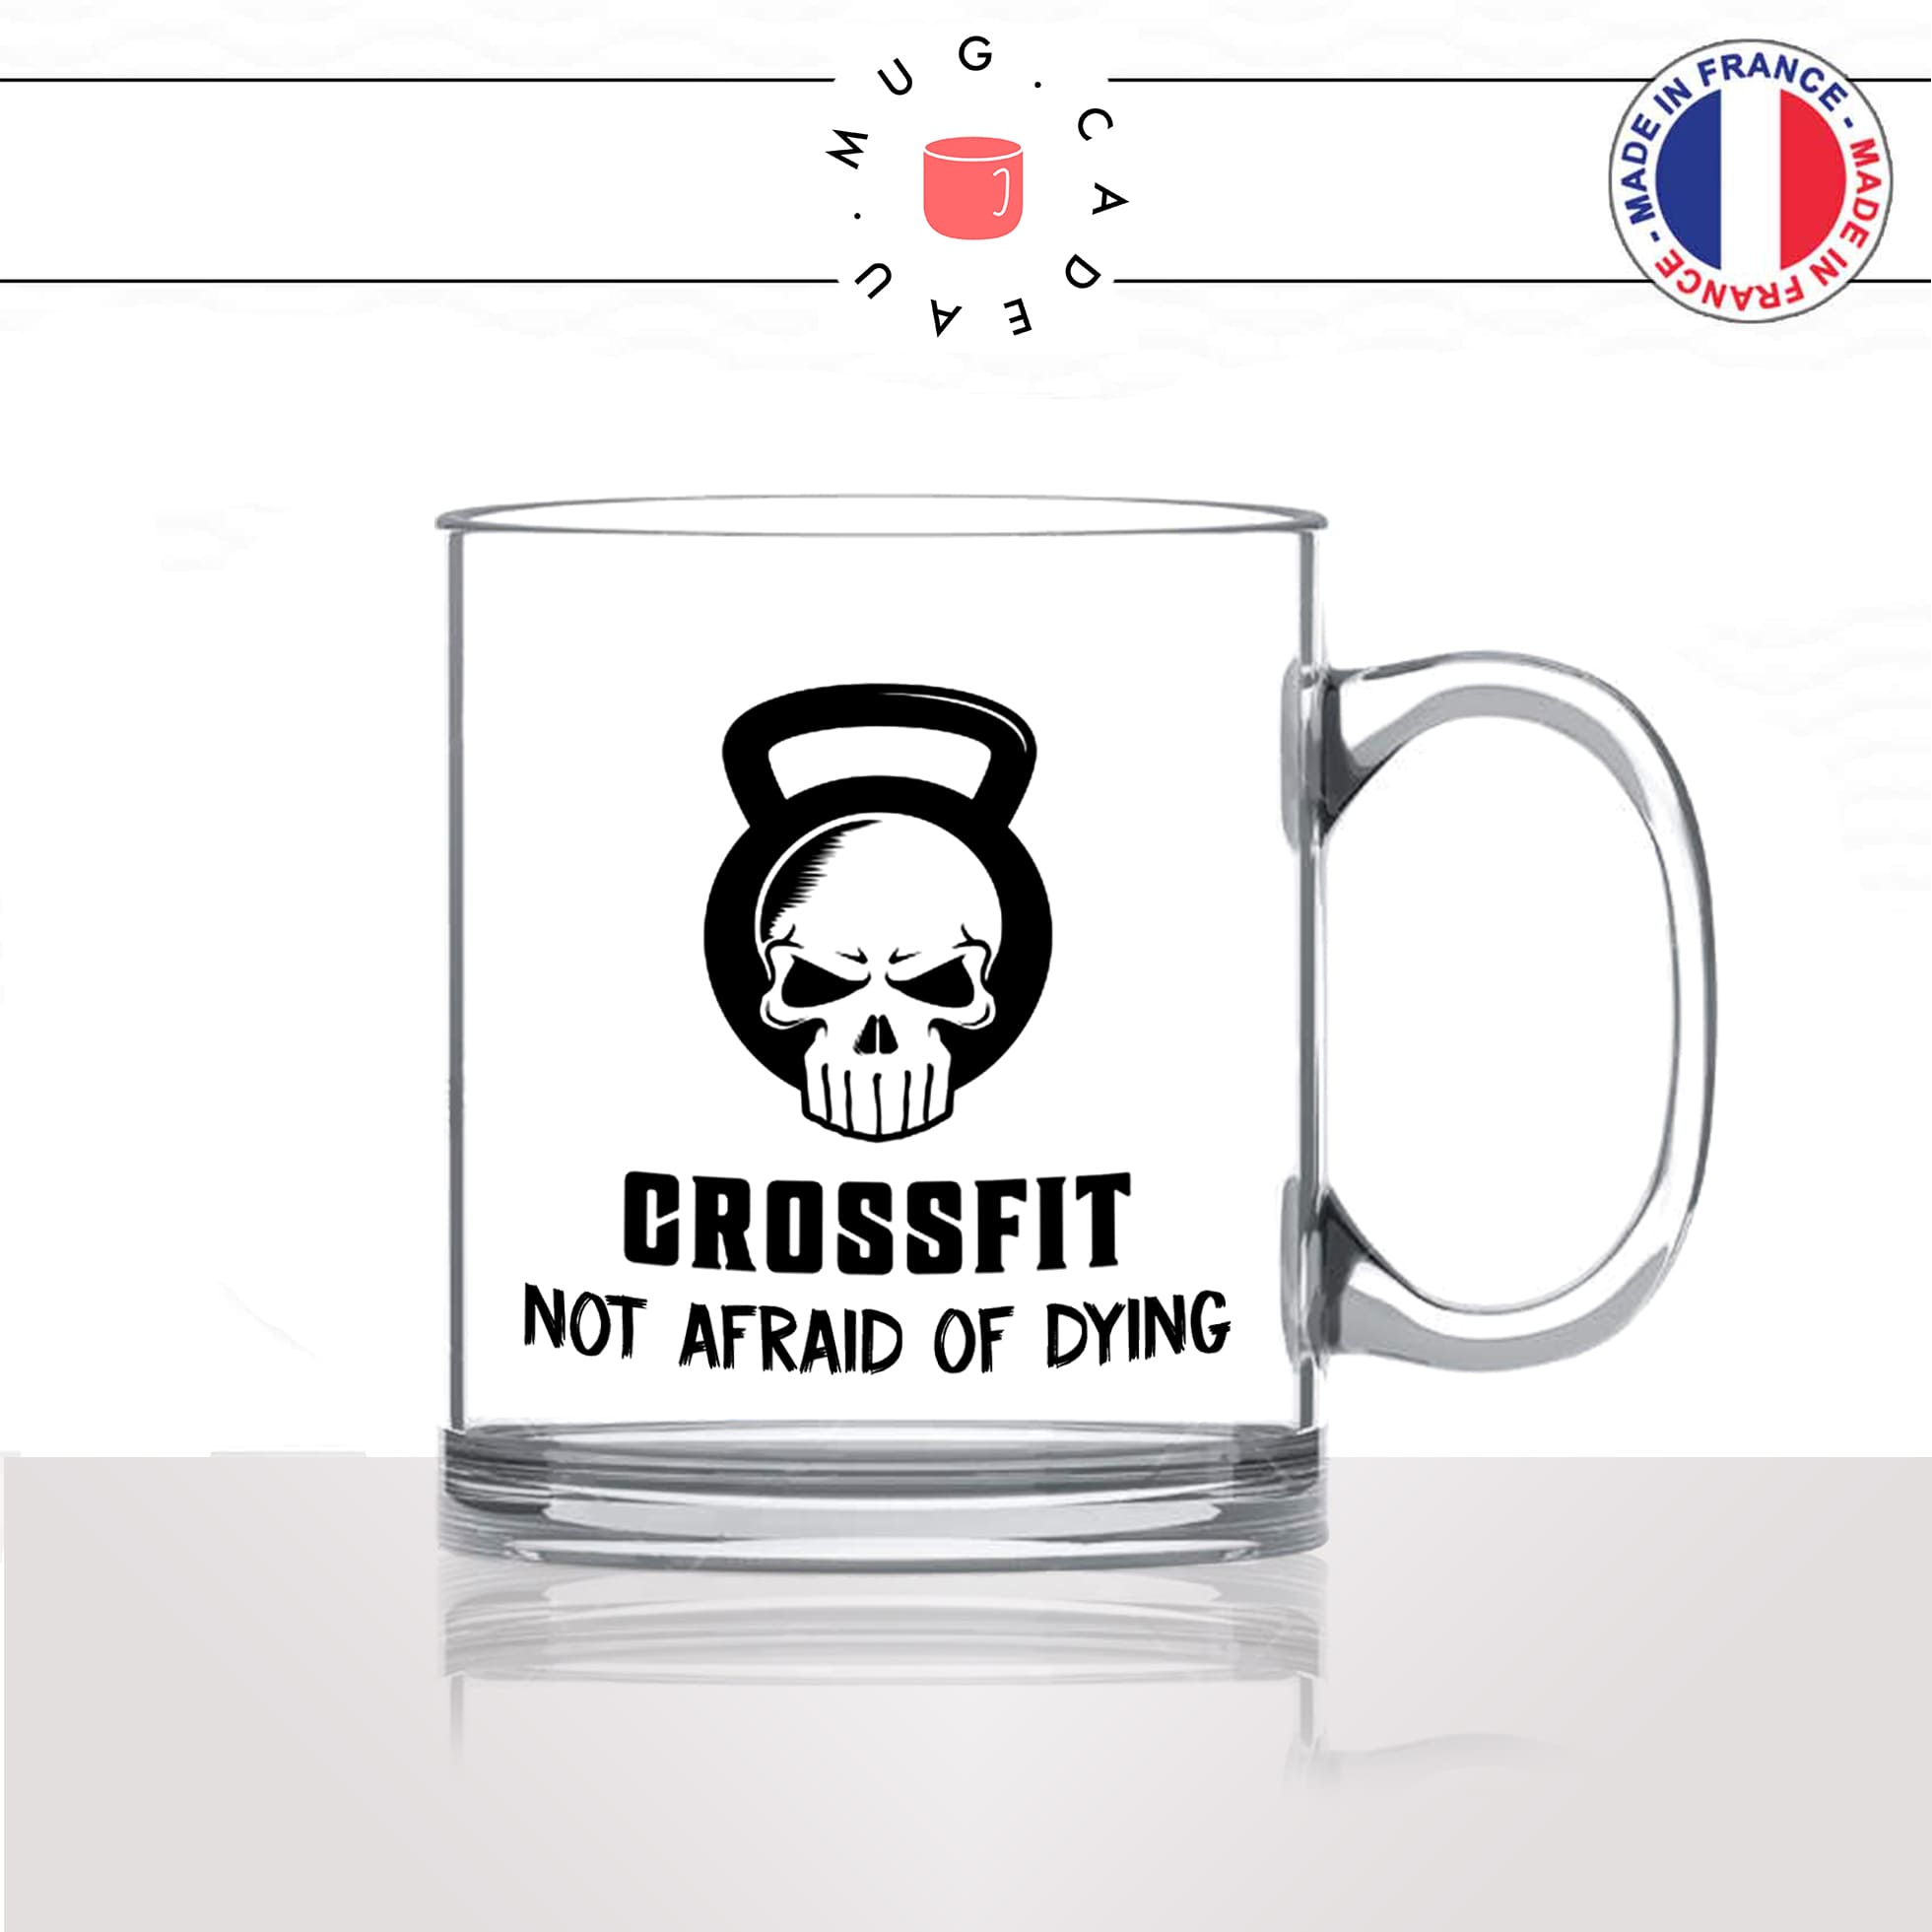 mug-tasse-en-verre-transparent-glass-crossfit-not-afraid-of-dying-sport-cross-training-kettlebell-musculation-idée-cadeau-fun-cool-café-thé-original2